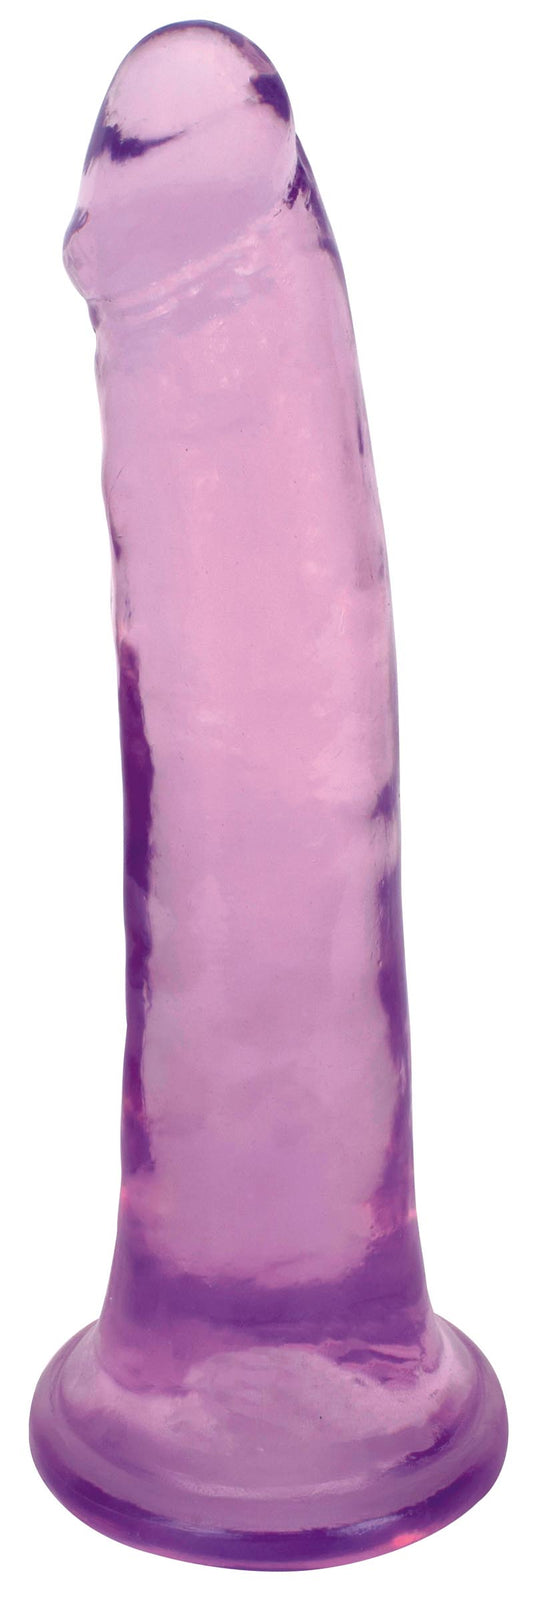 8 Inch Slim Stick Grape Ice Dildo - UABDSM